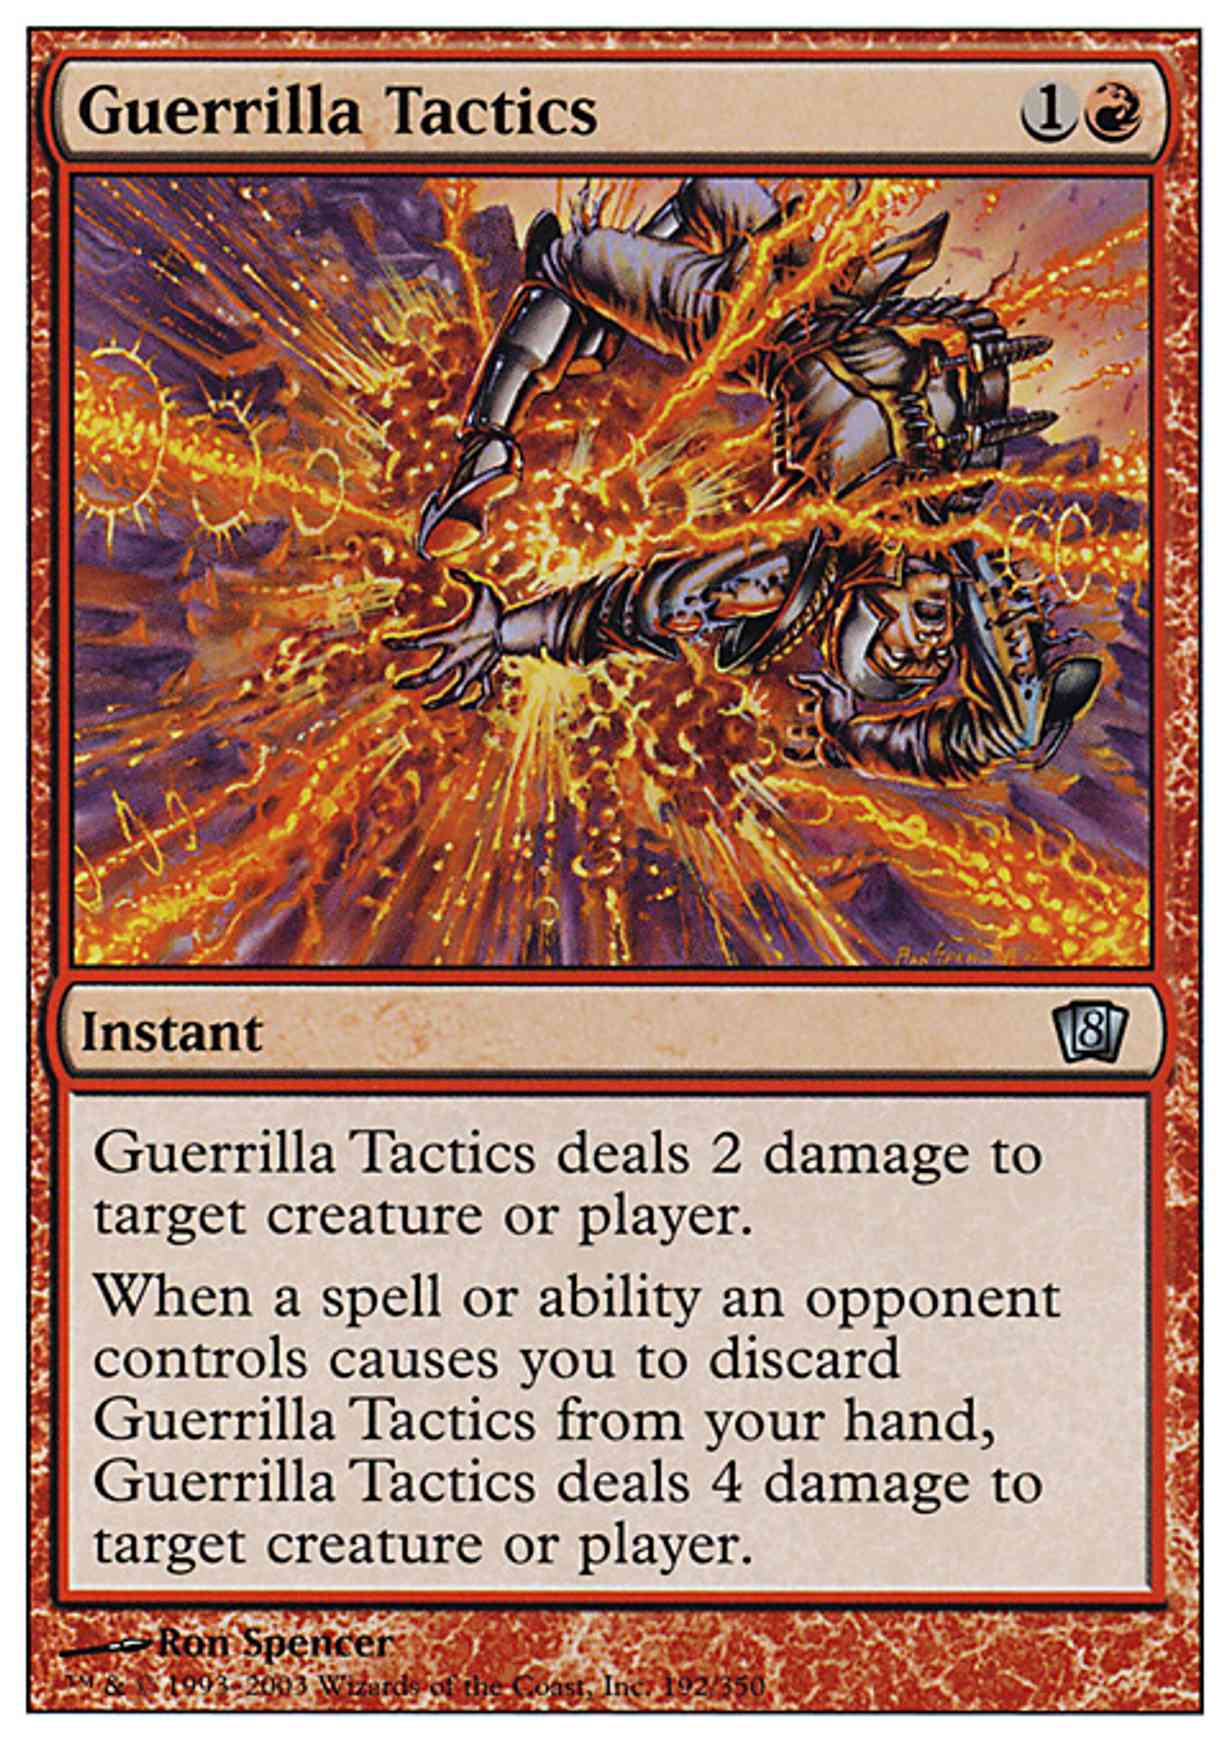 Guerrilla Tactics magic card front